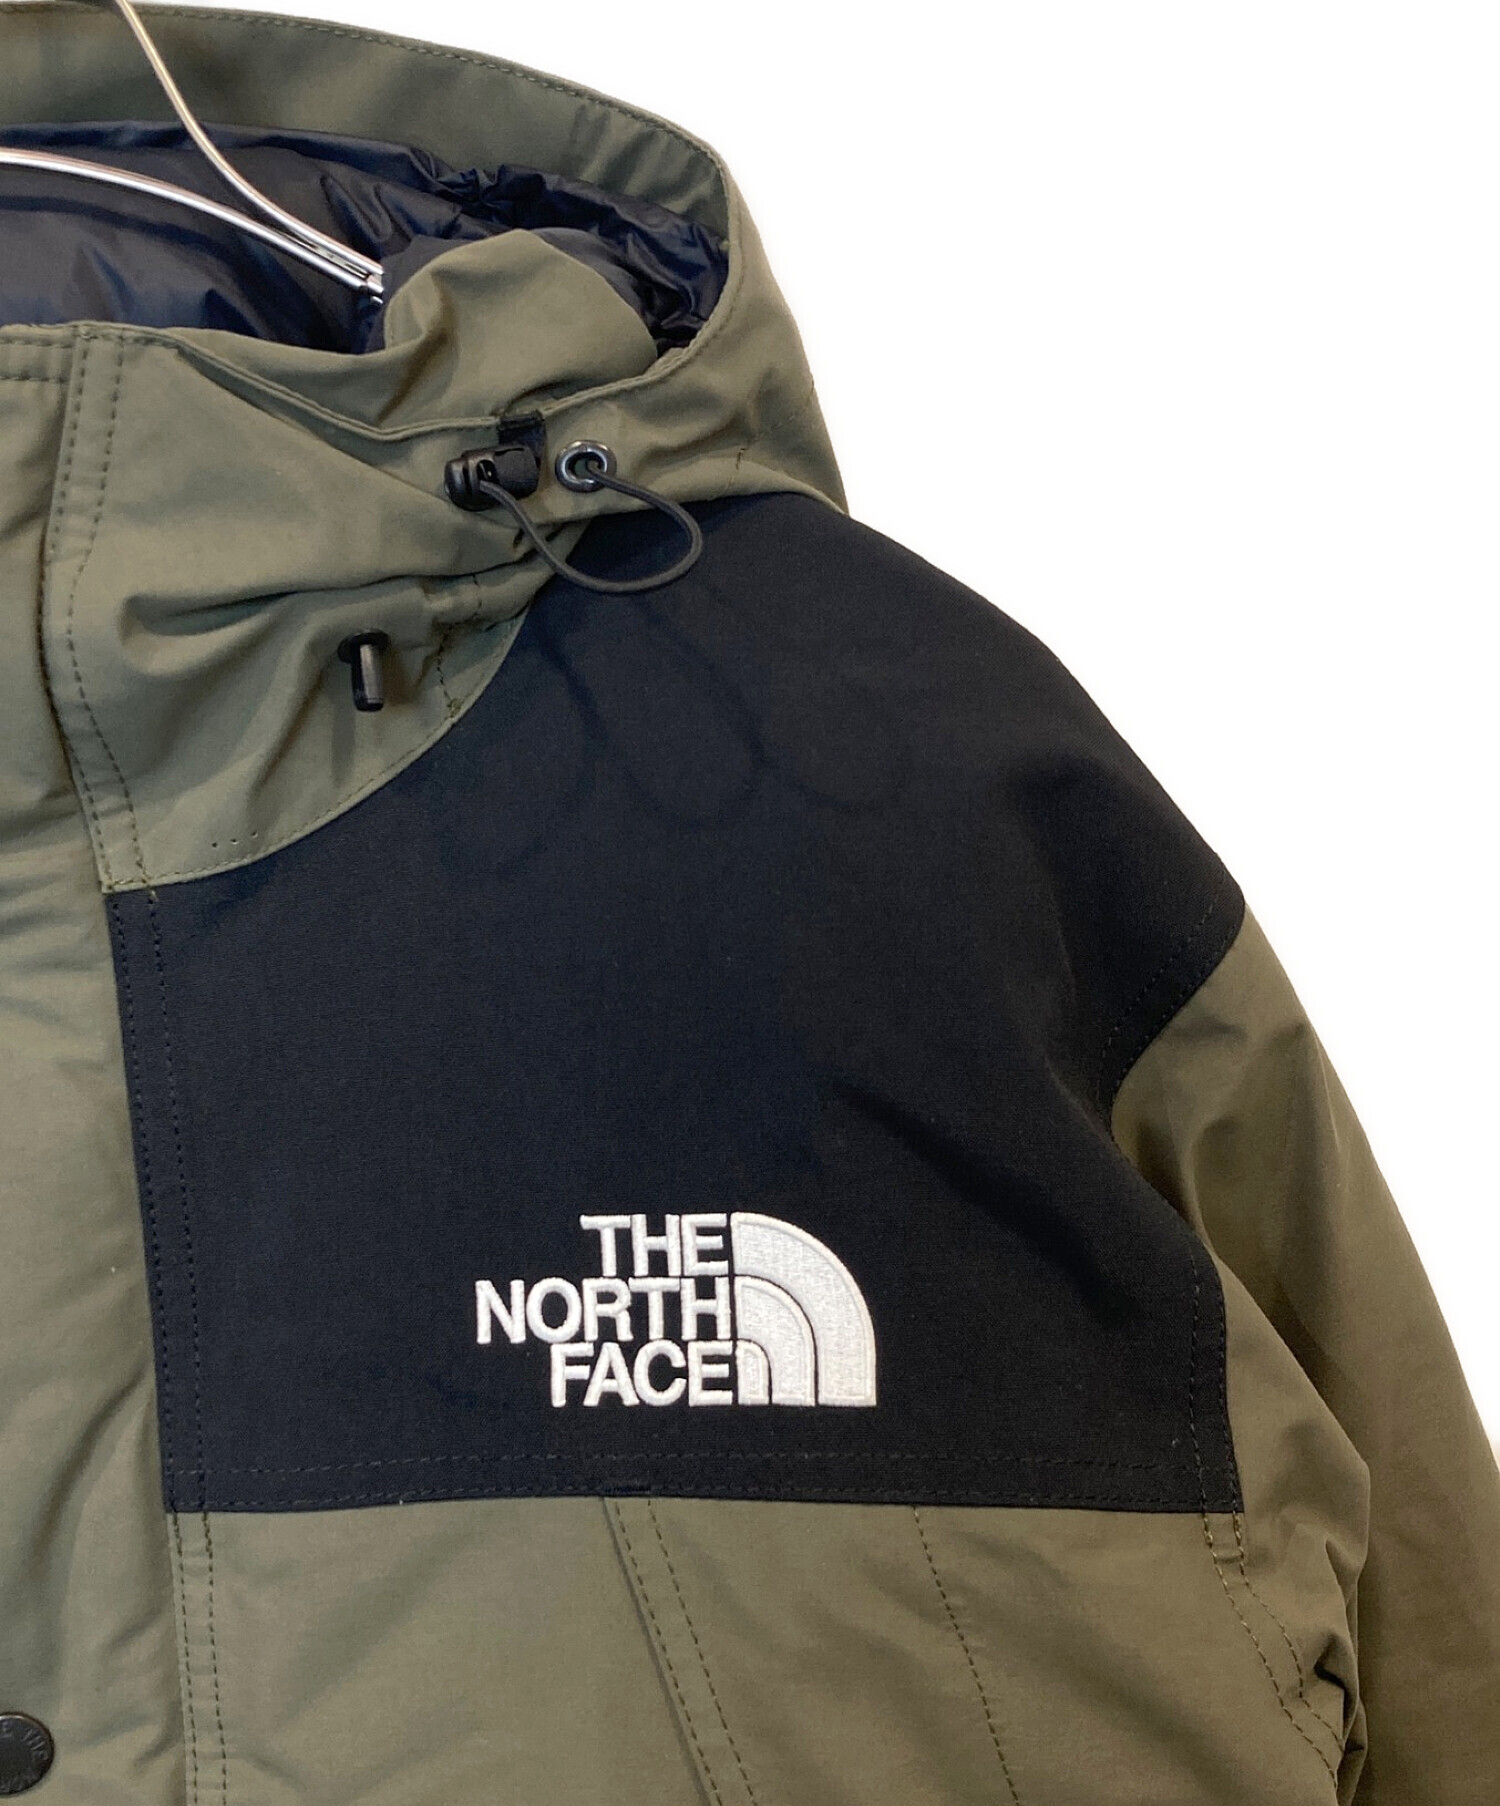 THE NORTH FACE (ザ ノース フェイス) Mountain Down Jacket マウンテンダウンジャケット ND91930 カーキ  サイズ:XL